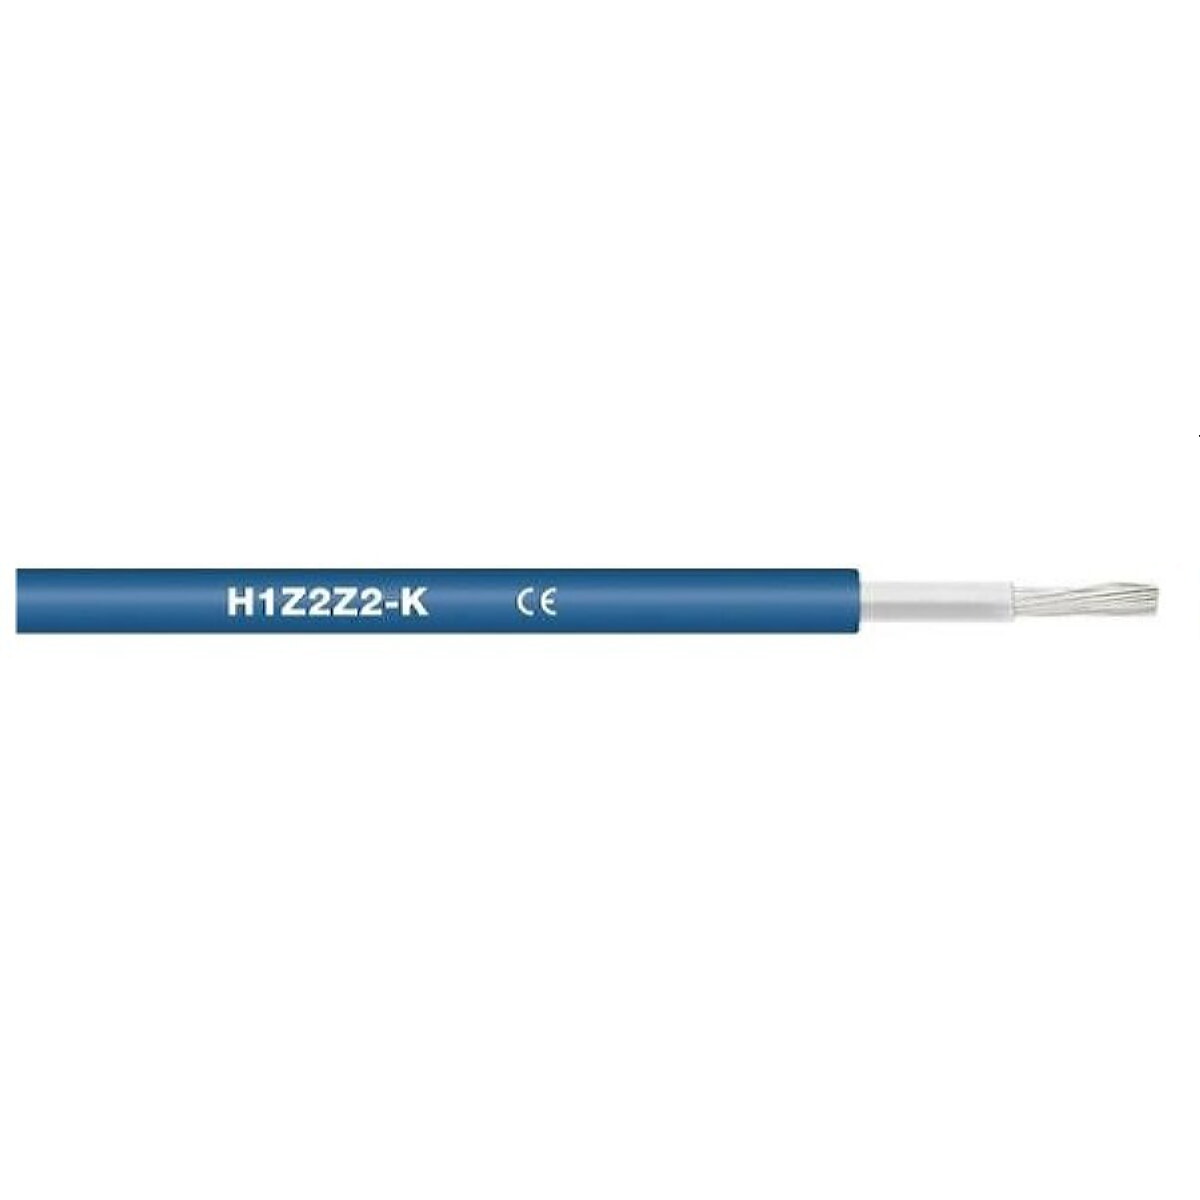 NEUT solar cable H1Z2Z2-K 1x6 mm² SP500m blue can be buried EN50618